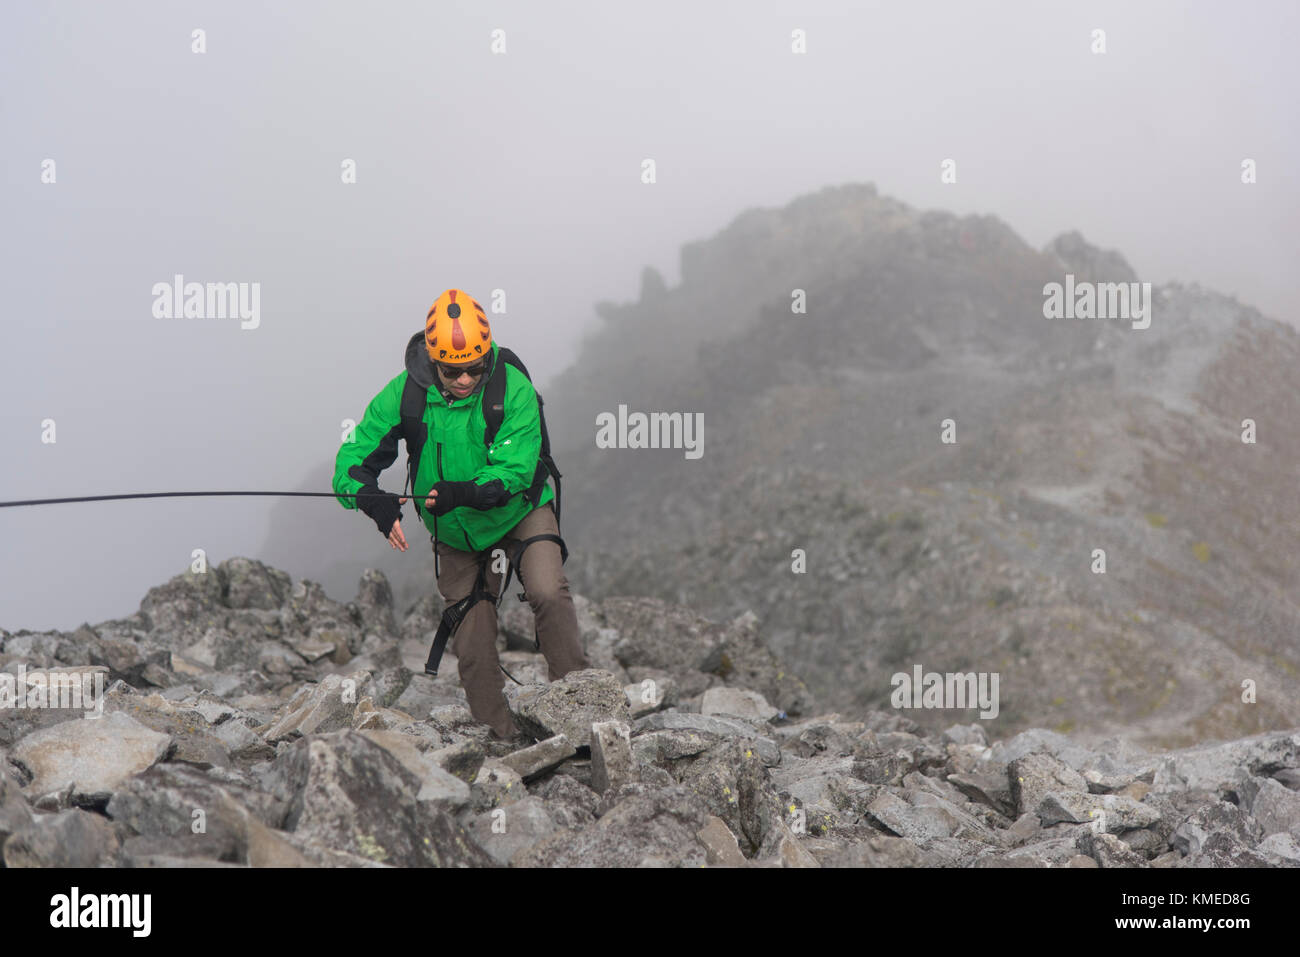 One climber holding a rope on a rocky section while hikking up at the Nevado de Toluca volcano in Estado de Mexico, Mexico. Stock Photo